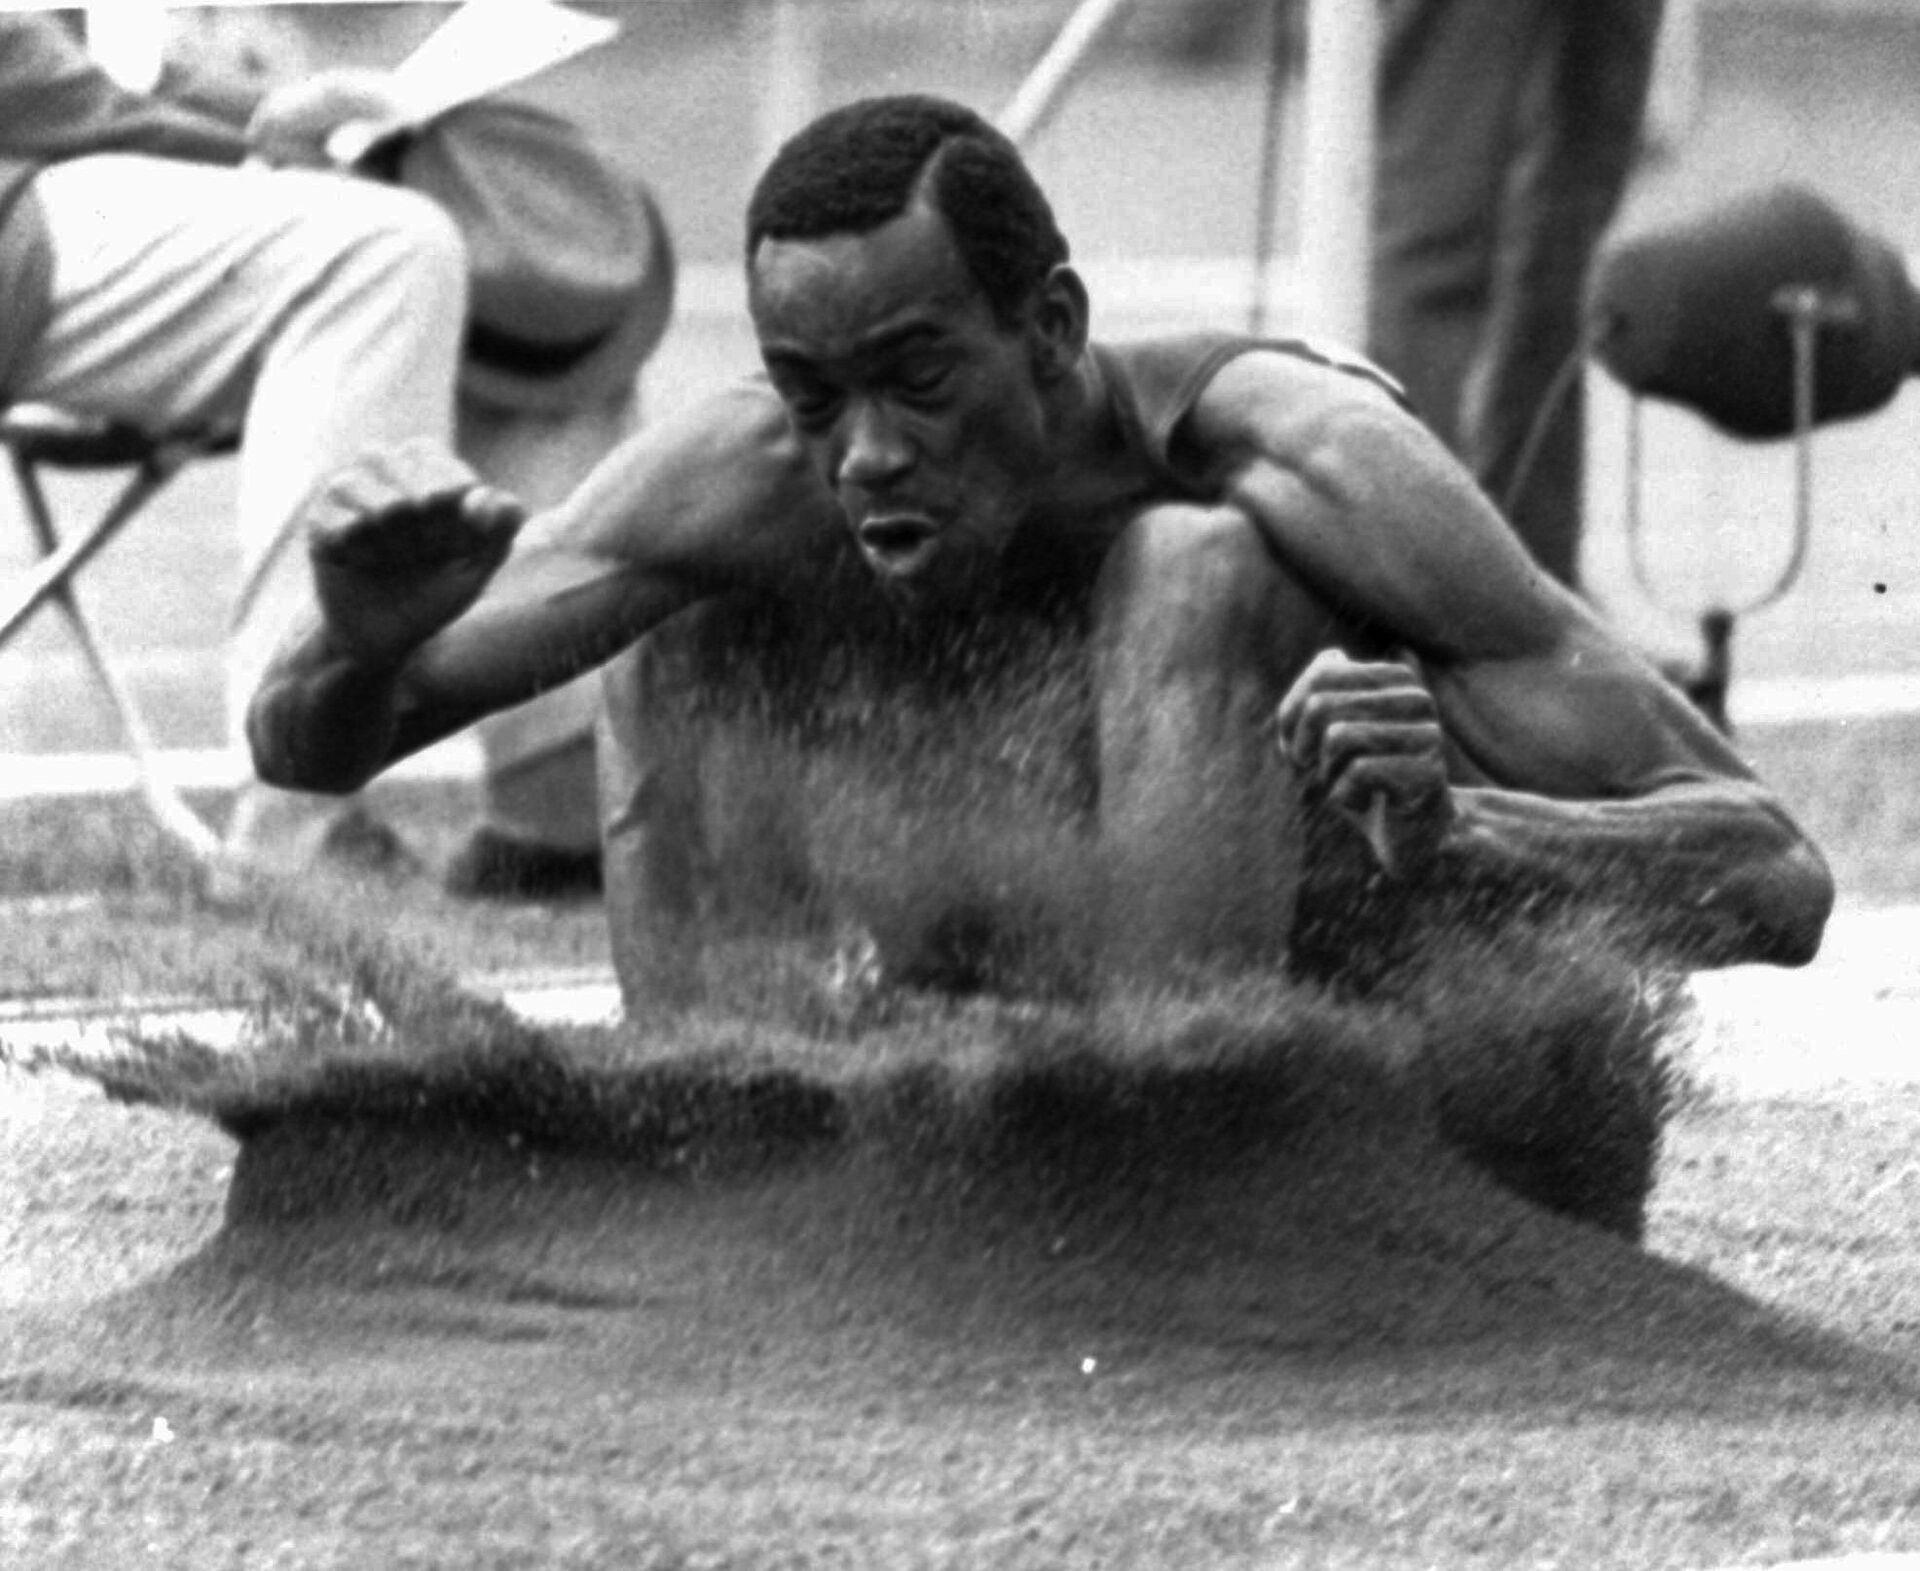 Американский спортсмен Боб Бимон на соревнованиях по прыжкам в длину на Олимпийских играх в Мексике 19 октября 1968 года - Sputnik Азербайджан, 1920, 01.10.2021